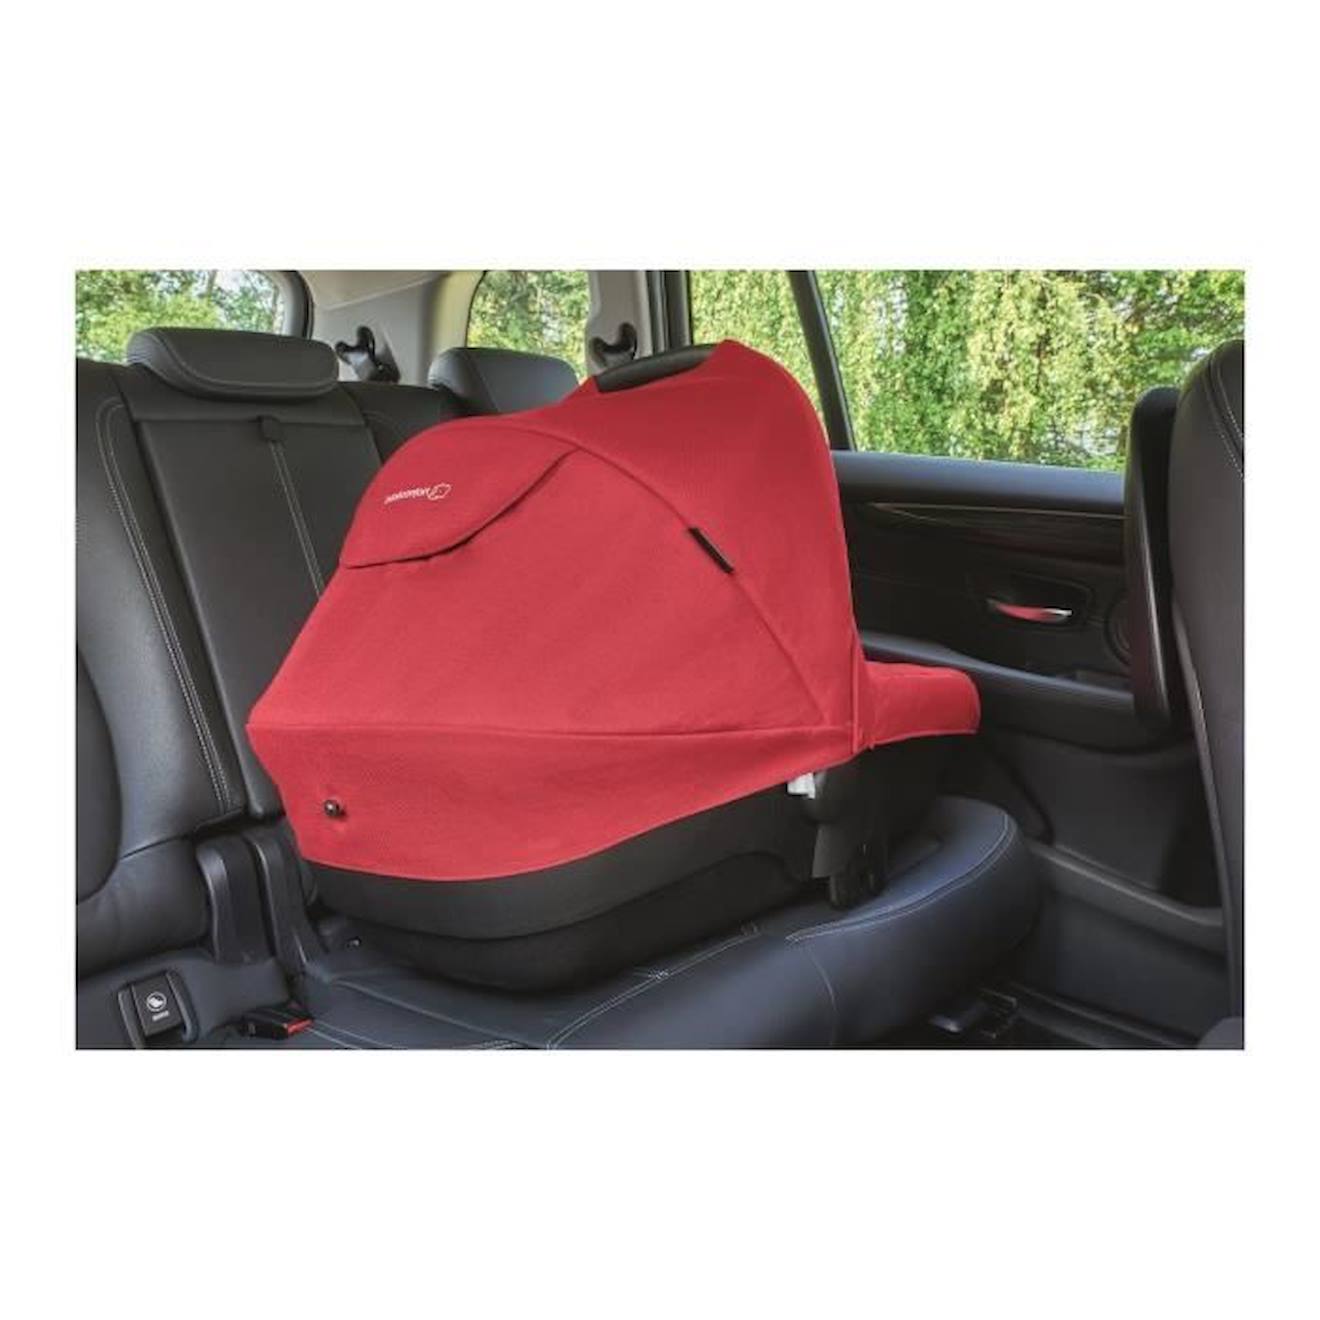 Nacelle BEBE CONFORT Amber, Groupe 0, Utilisable en voiture, Confortable,  Sécuritaire, 0-6 mois (environ 10kg), Vivid Red rouge - Bébé Confort